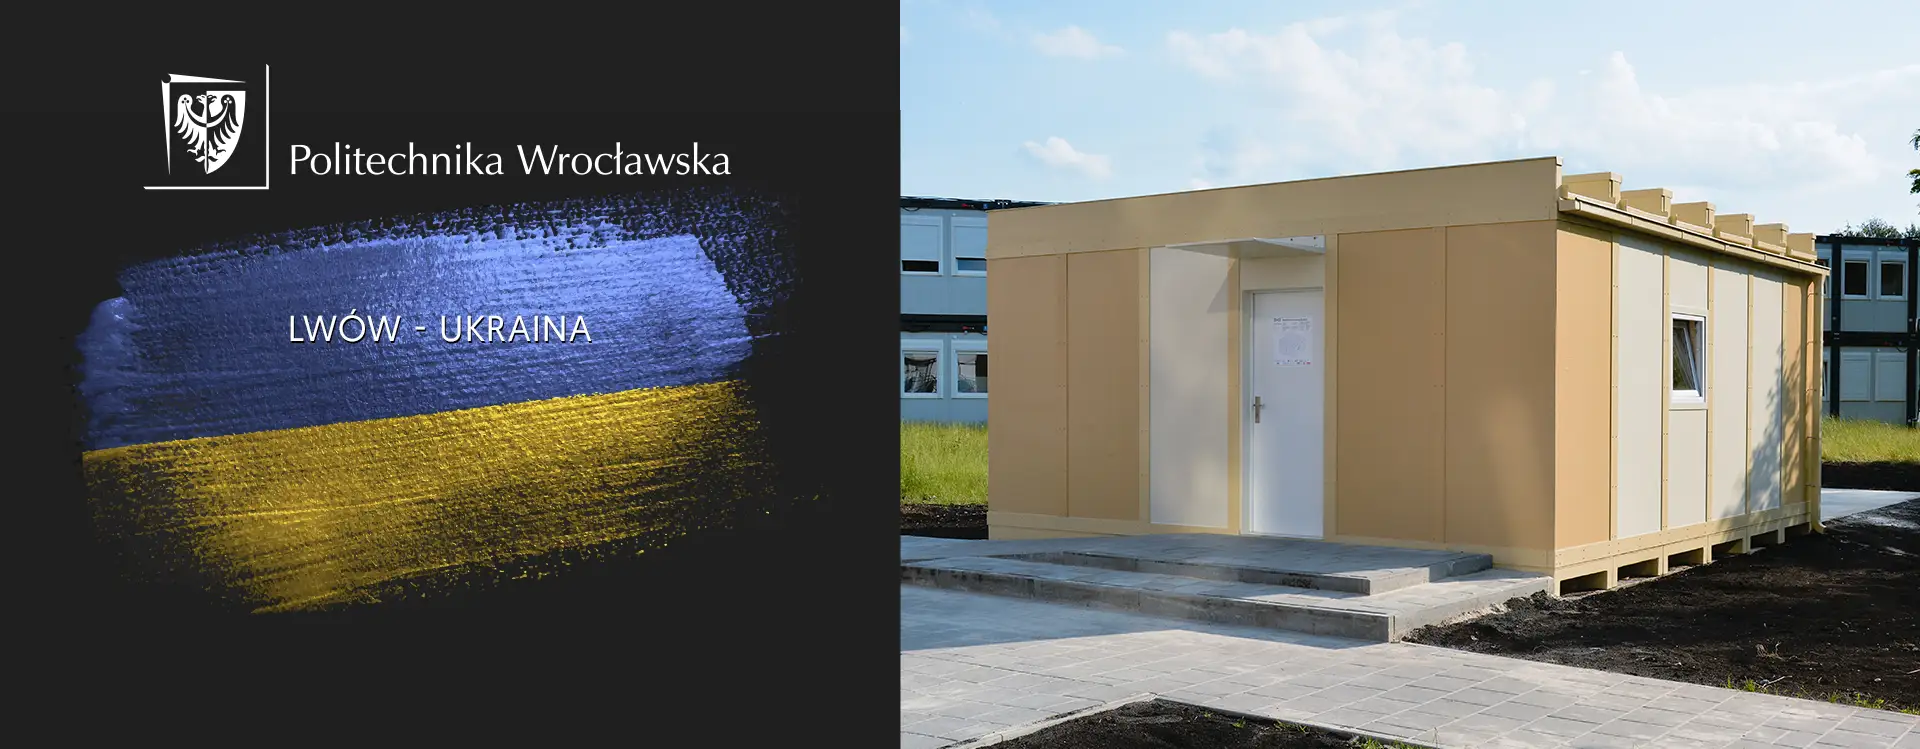 Budujemy domy pomocowe z Politechniką Wrocławską